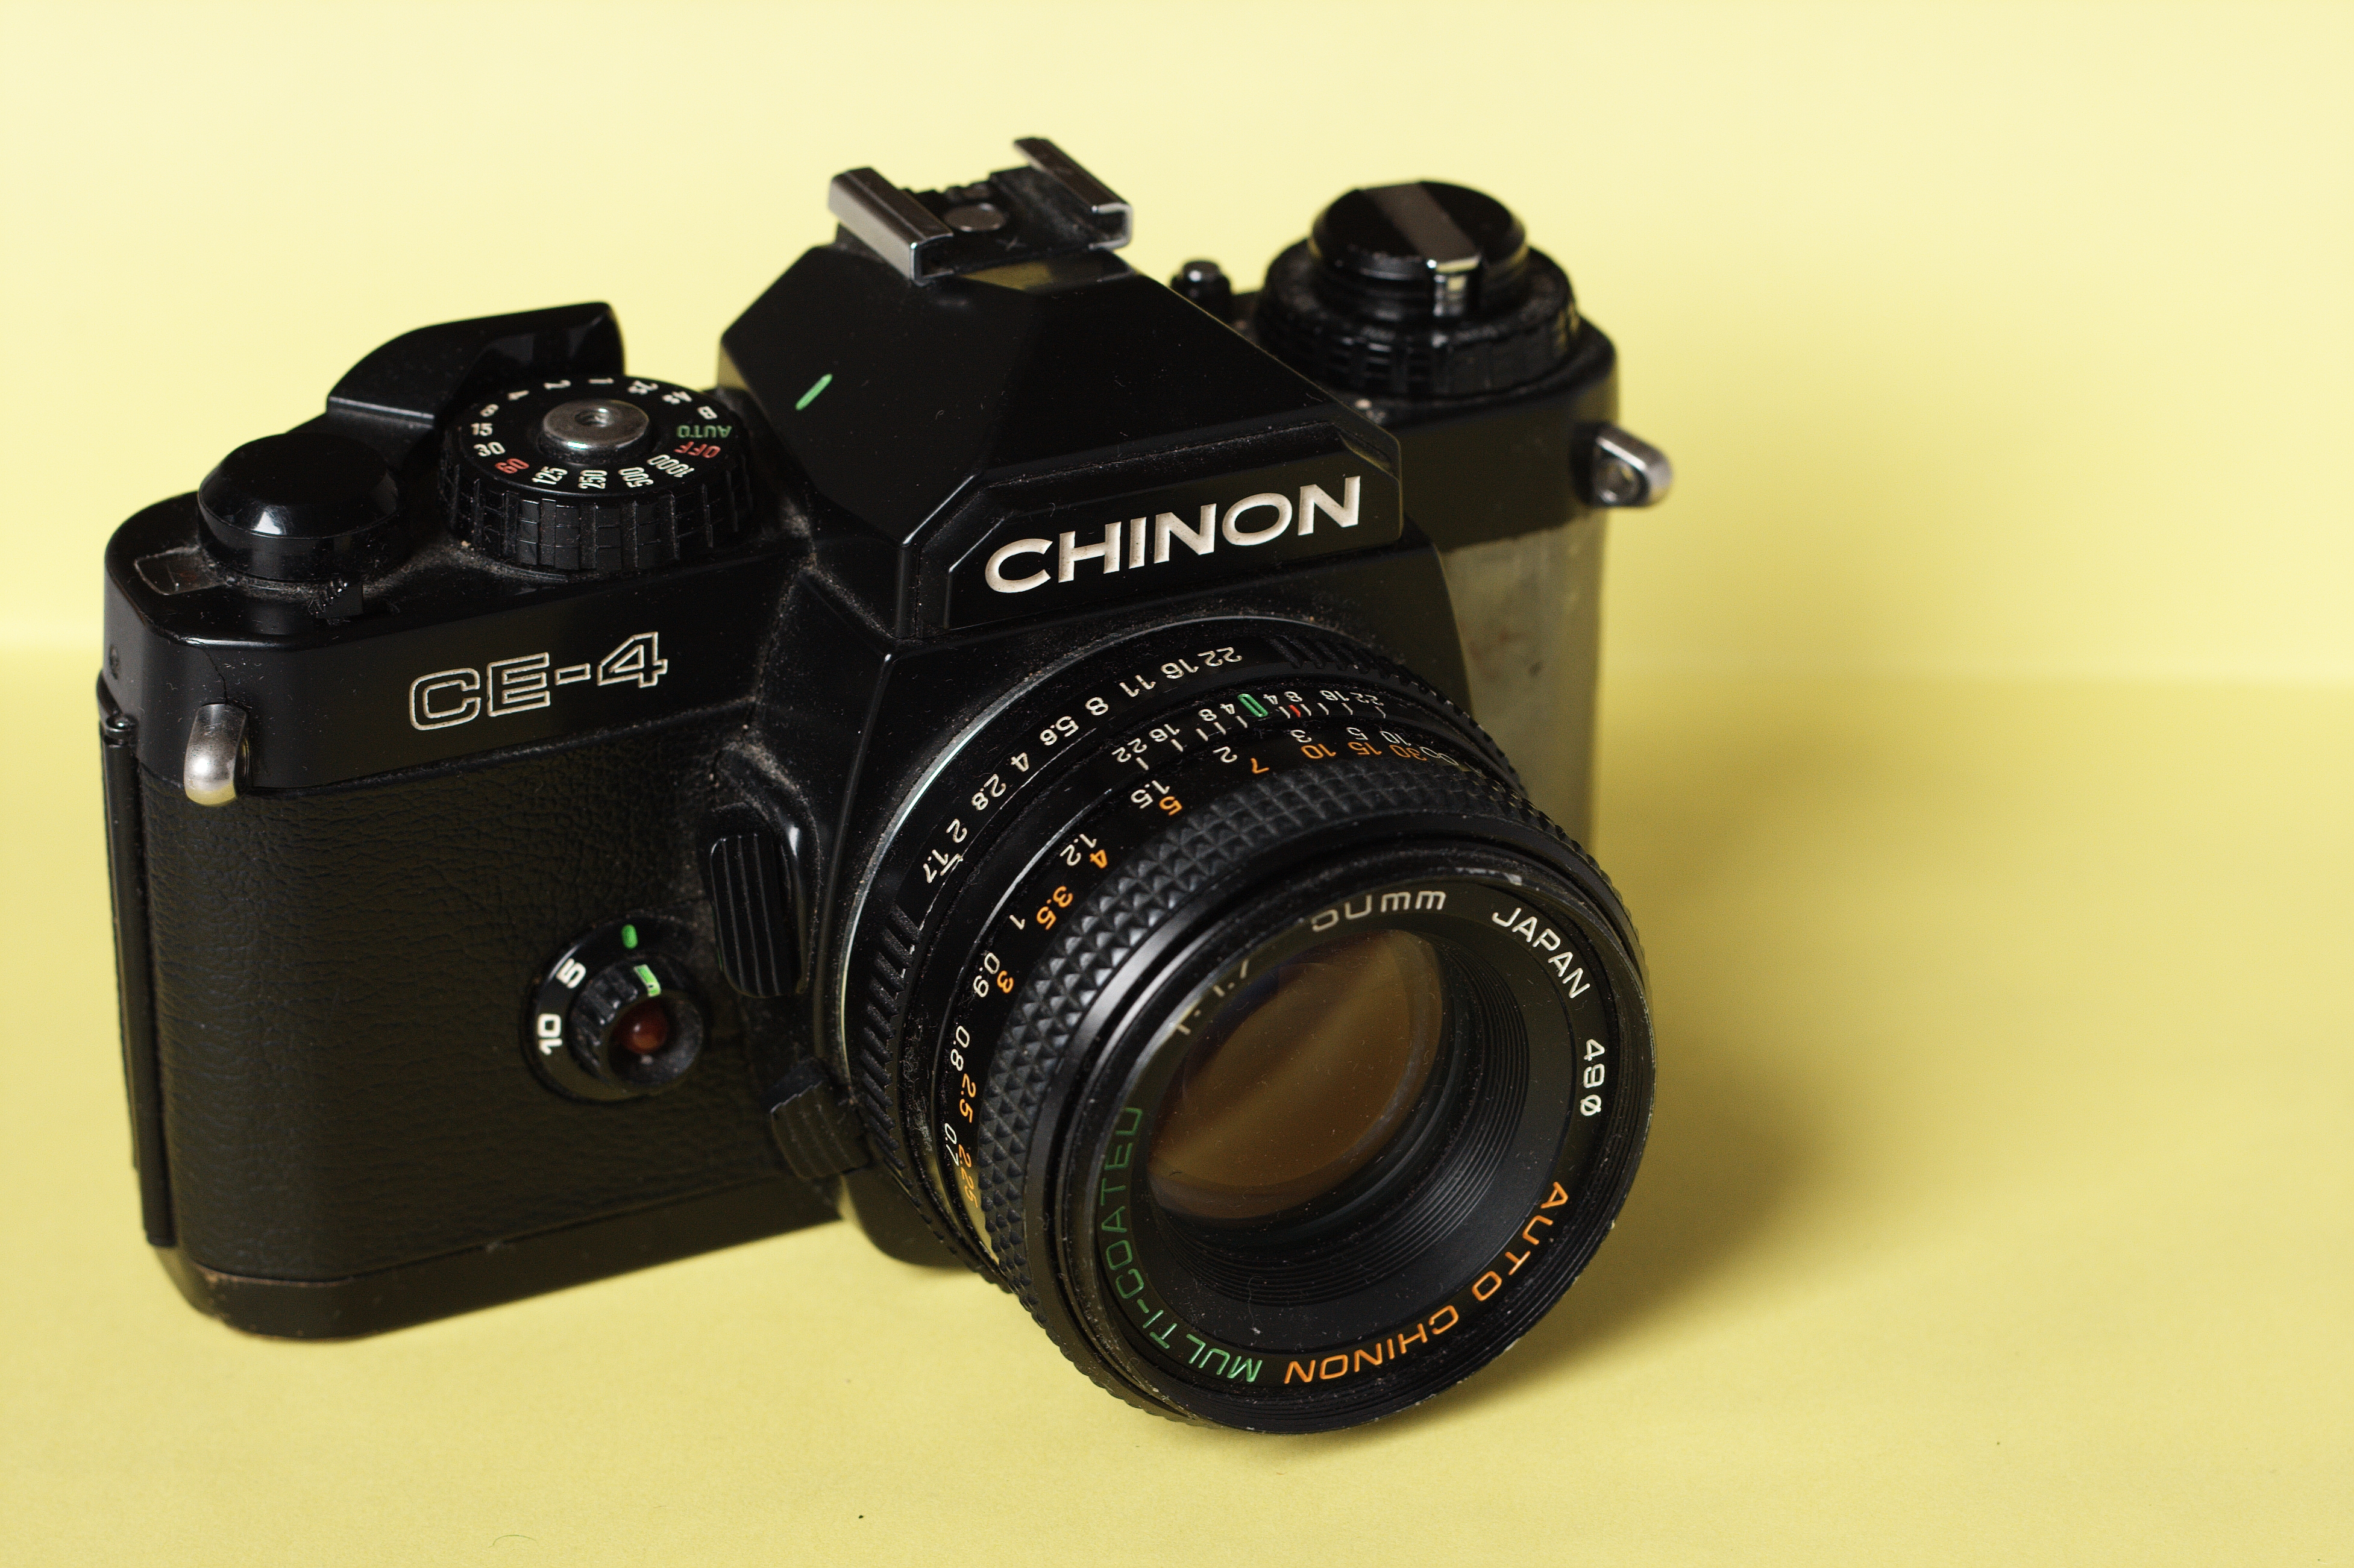 Chinon CE-4 SLR camera with Chinon Auto MC 50mm F1.7 lens